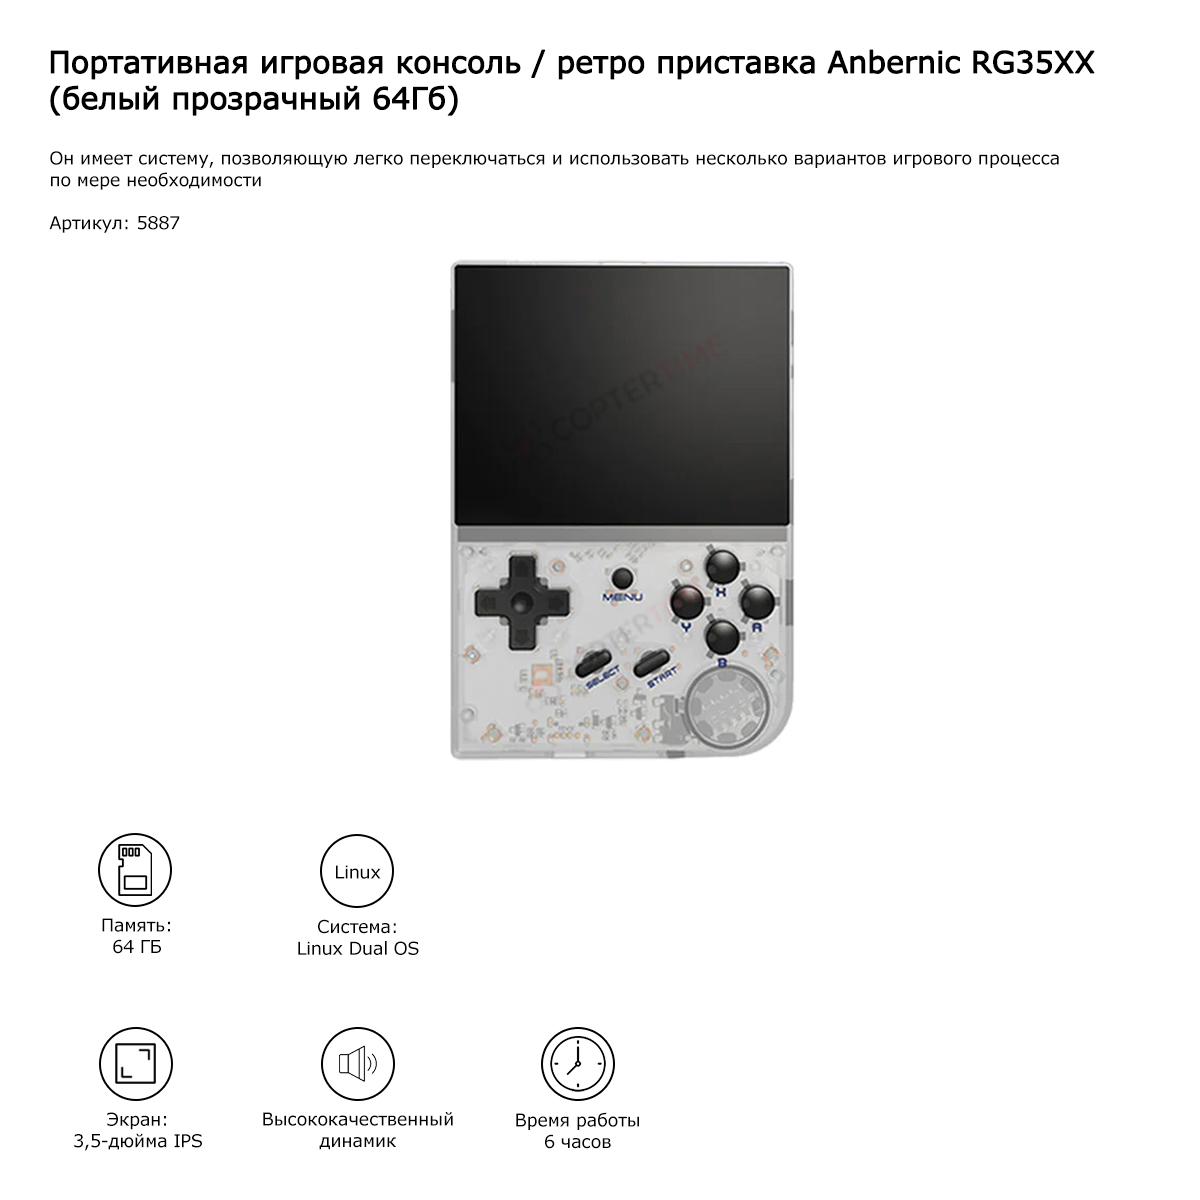 Игровая консоль Anbernic RG35XX (белый прозрачный 64Гб) 5000 игр